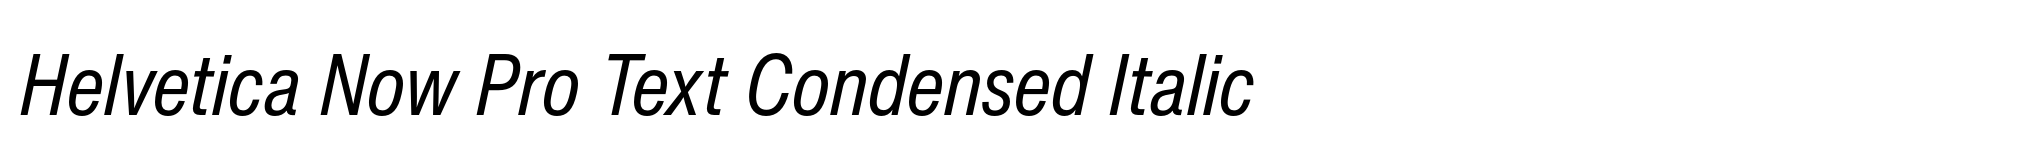 Helvetica Now Pro Text Condensed Italic image